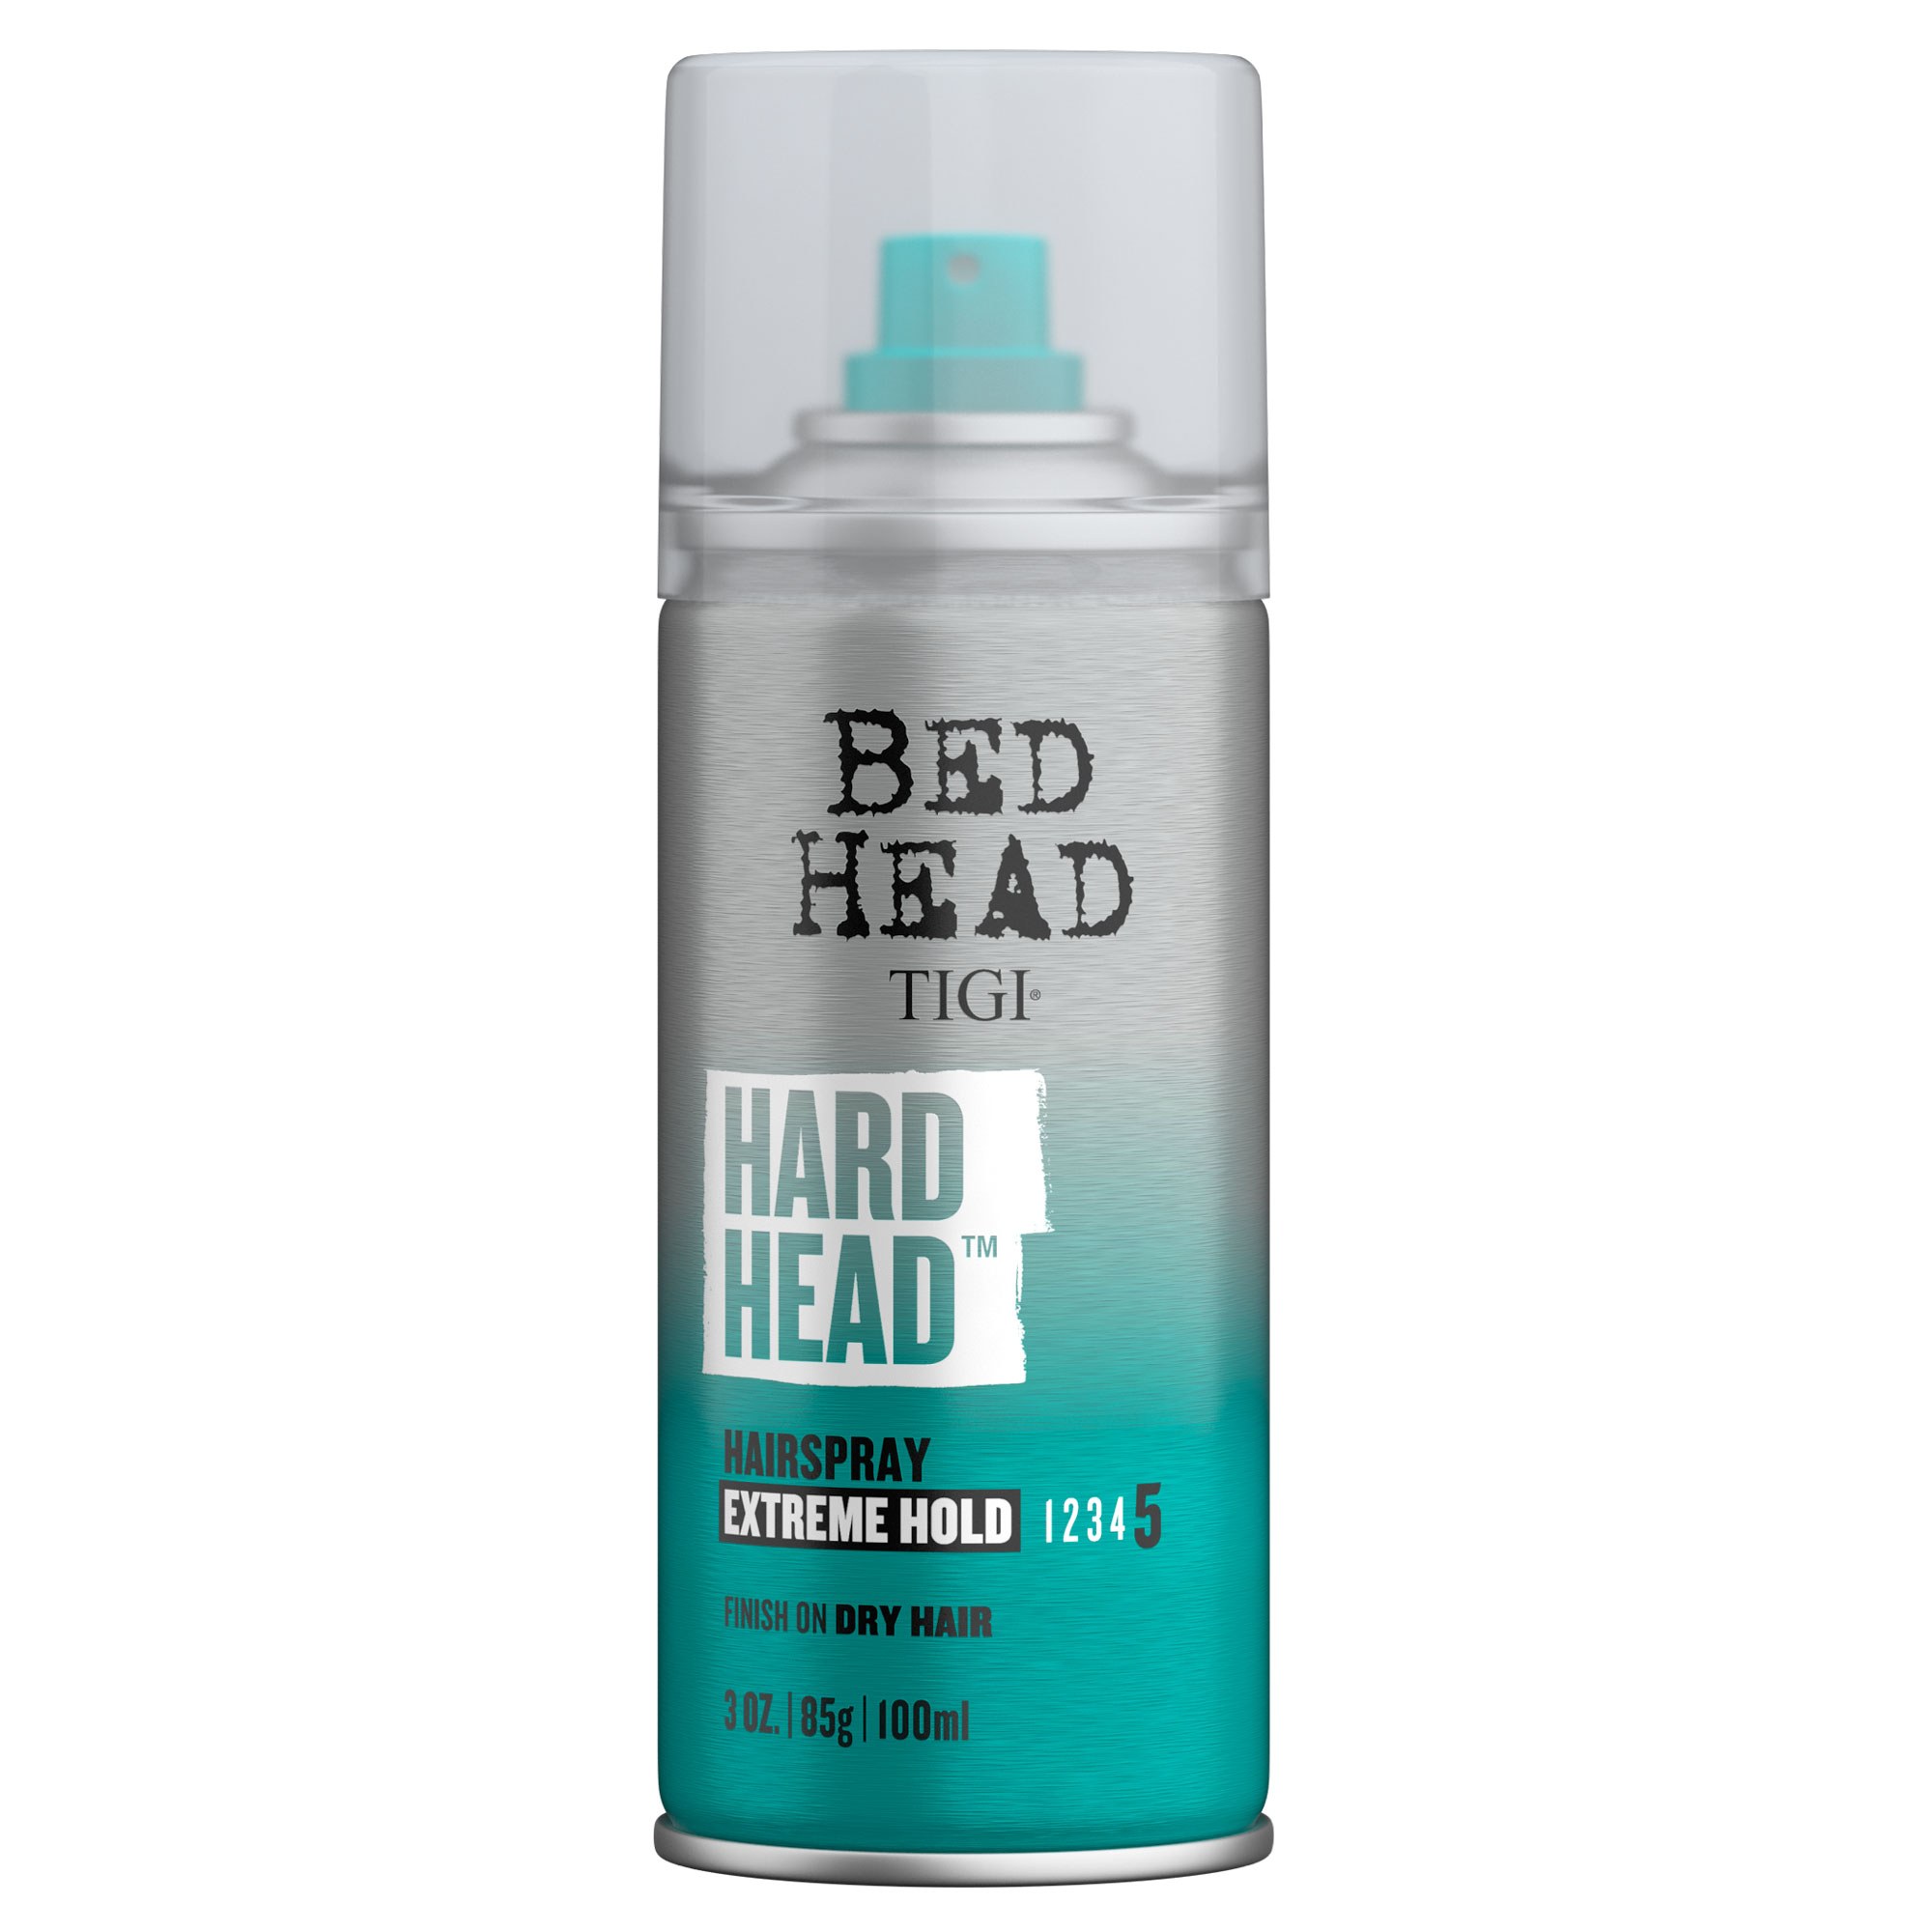 TIGI BED HEAD: Hard Head Hairspray Mini 3oz